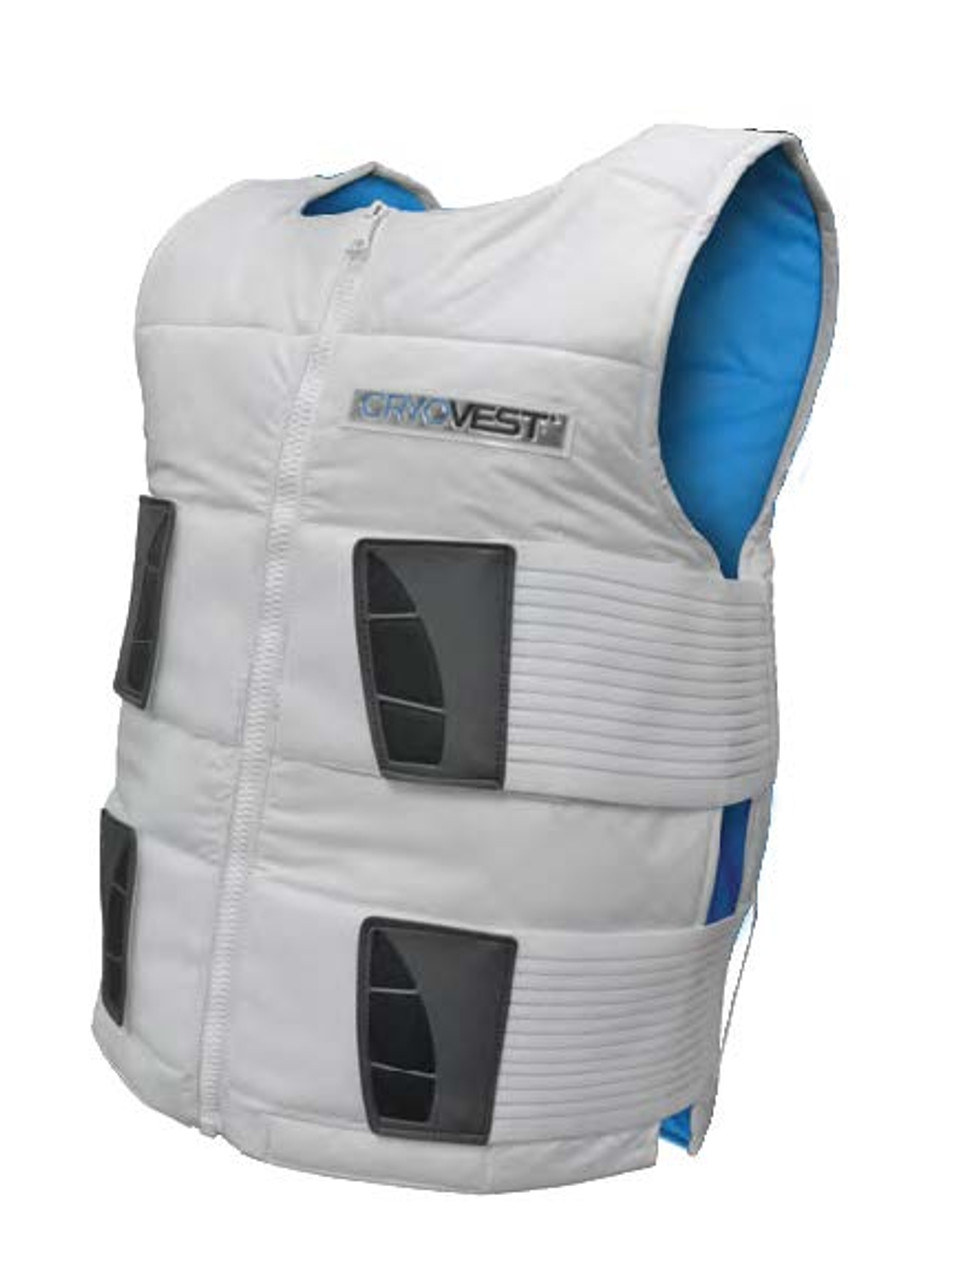 CryoVest High Performance Sport Cooling Vests